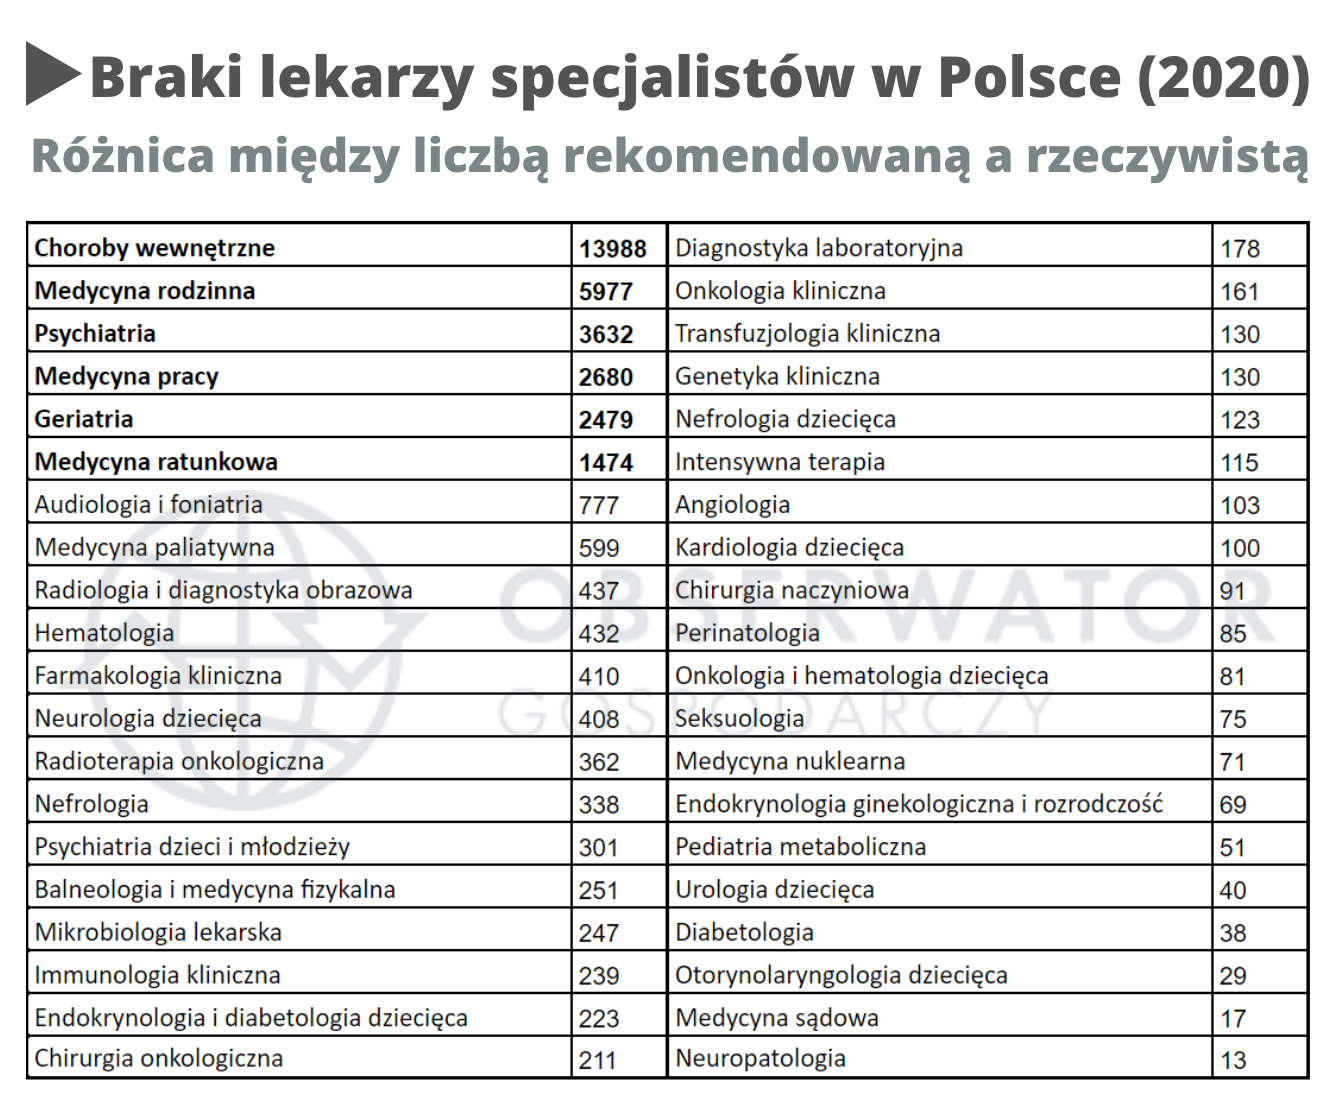 Braki lekarzy specjalistów w Polsce (2020)